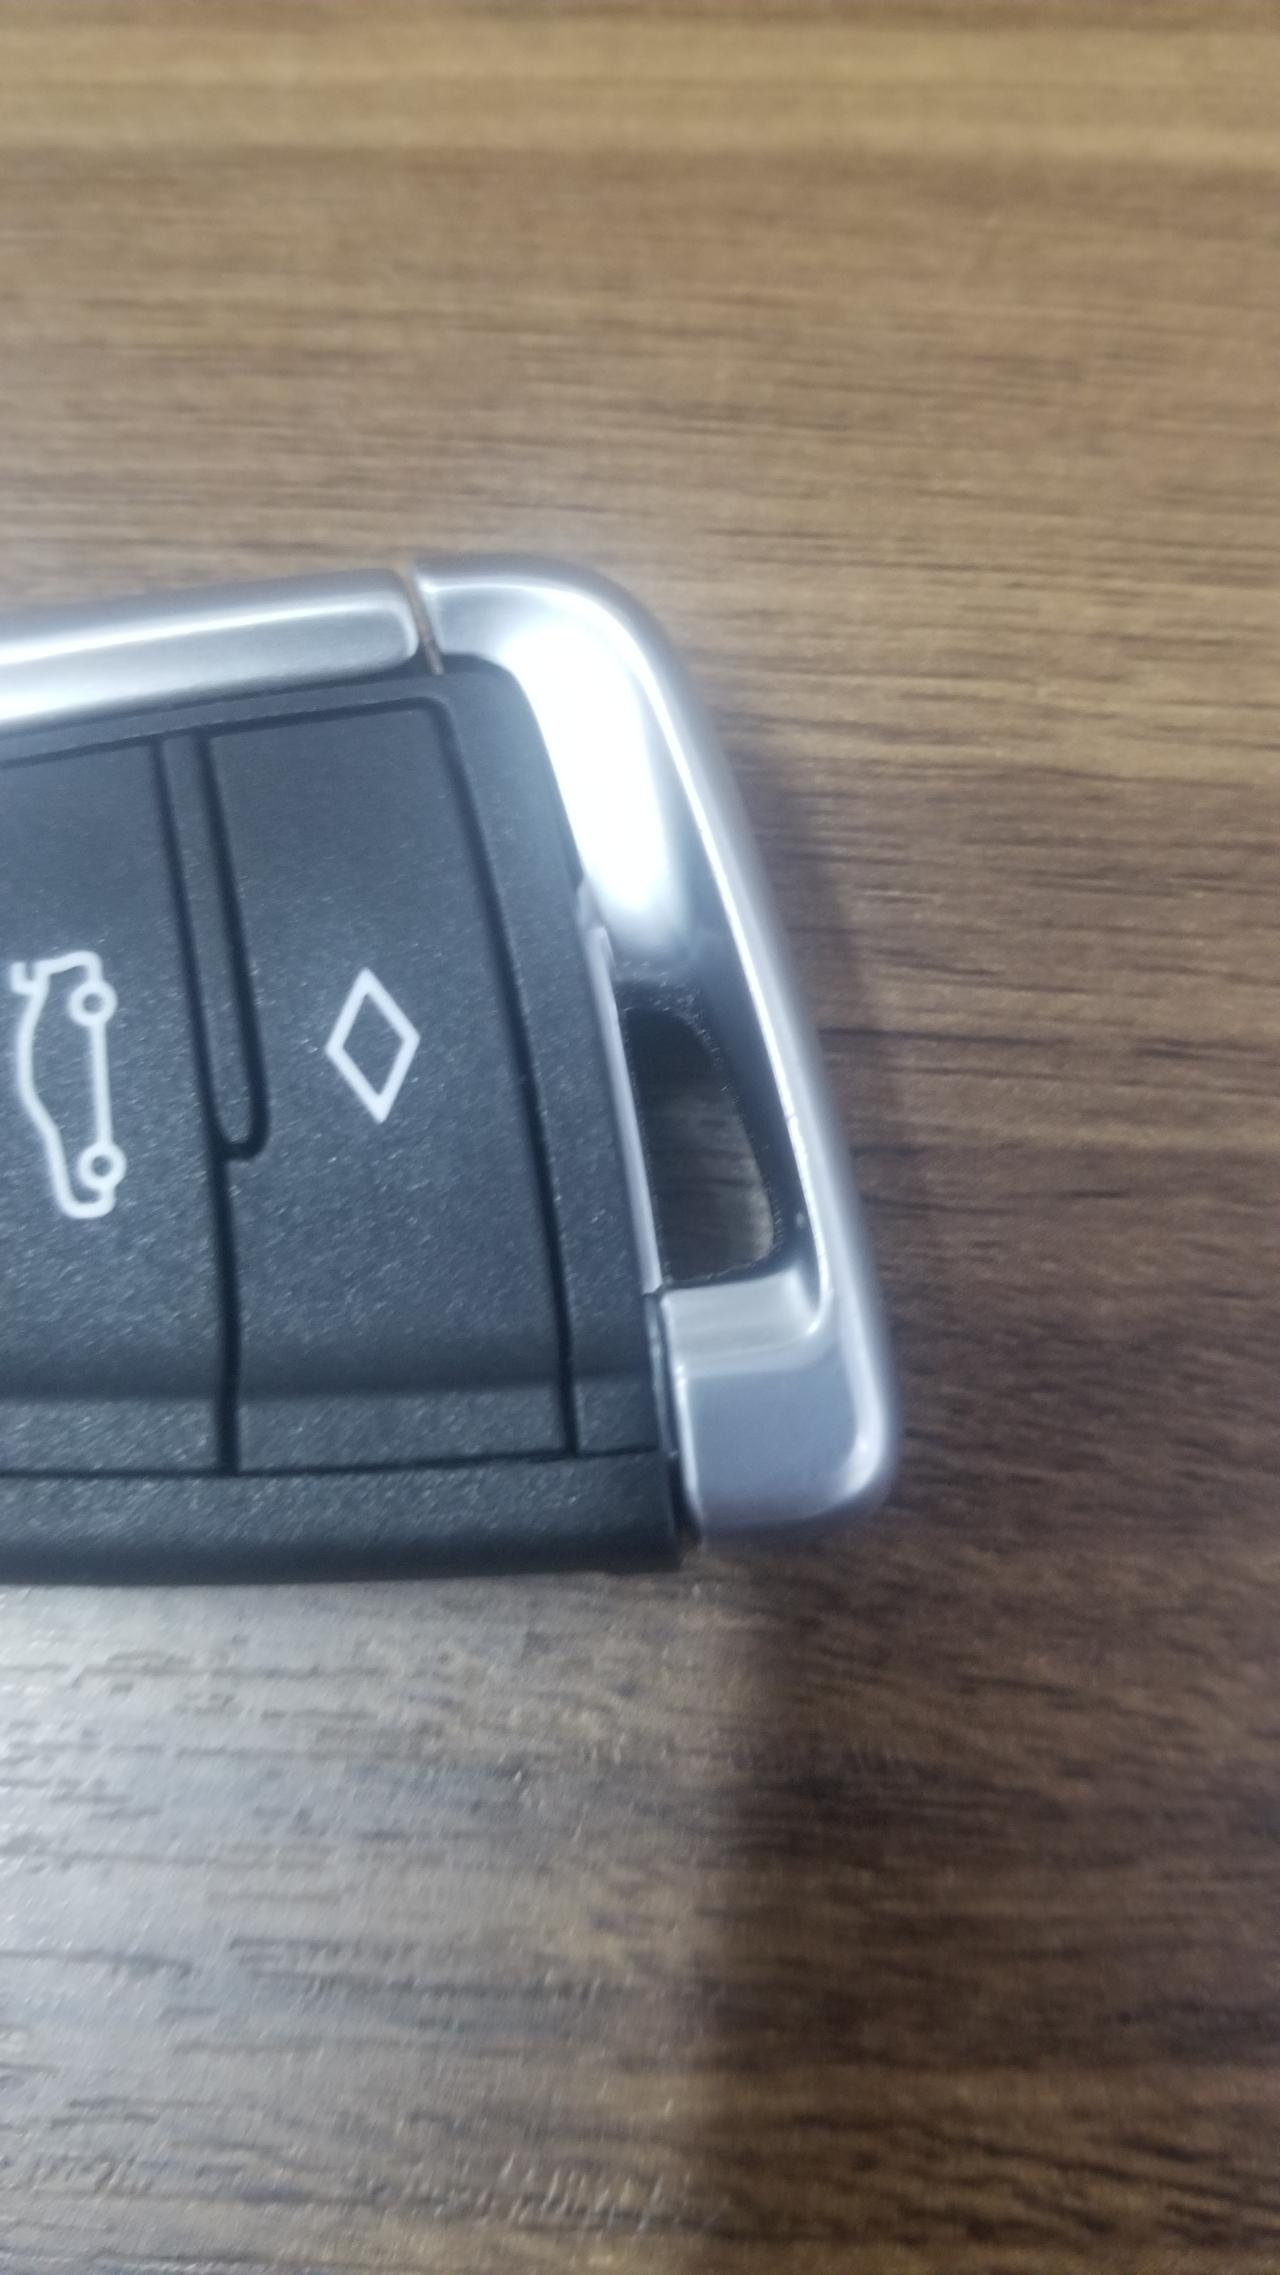 宝马3系车钥匙 想问问 你们的钥匙缝隙大不 车就是机械钥匙那块还能晃